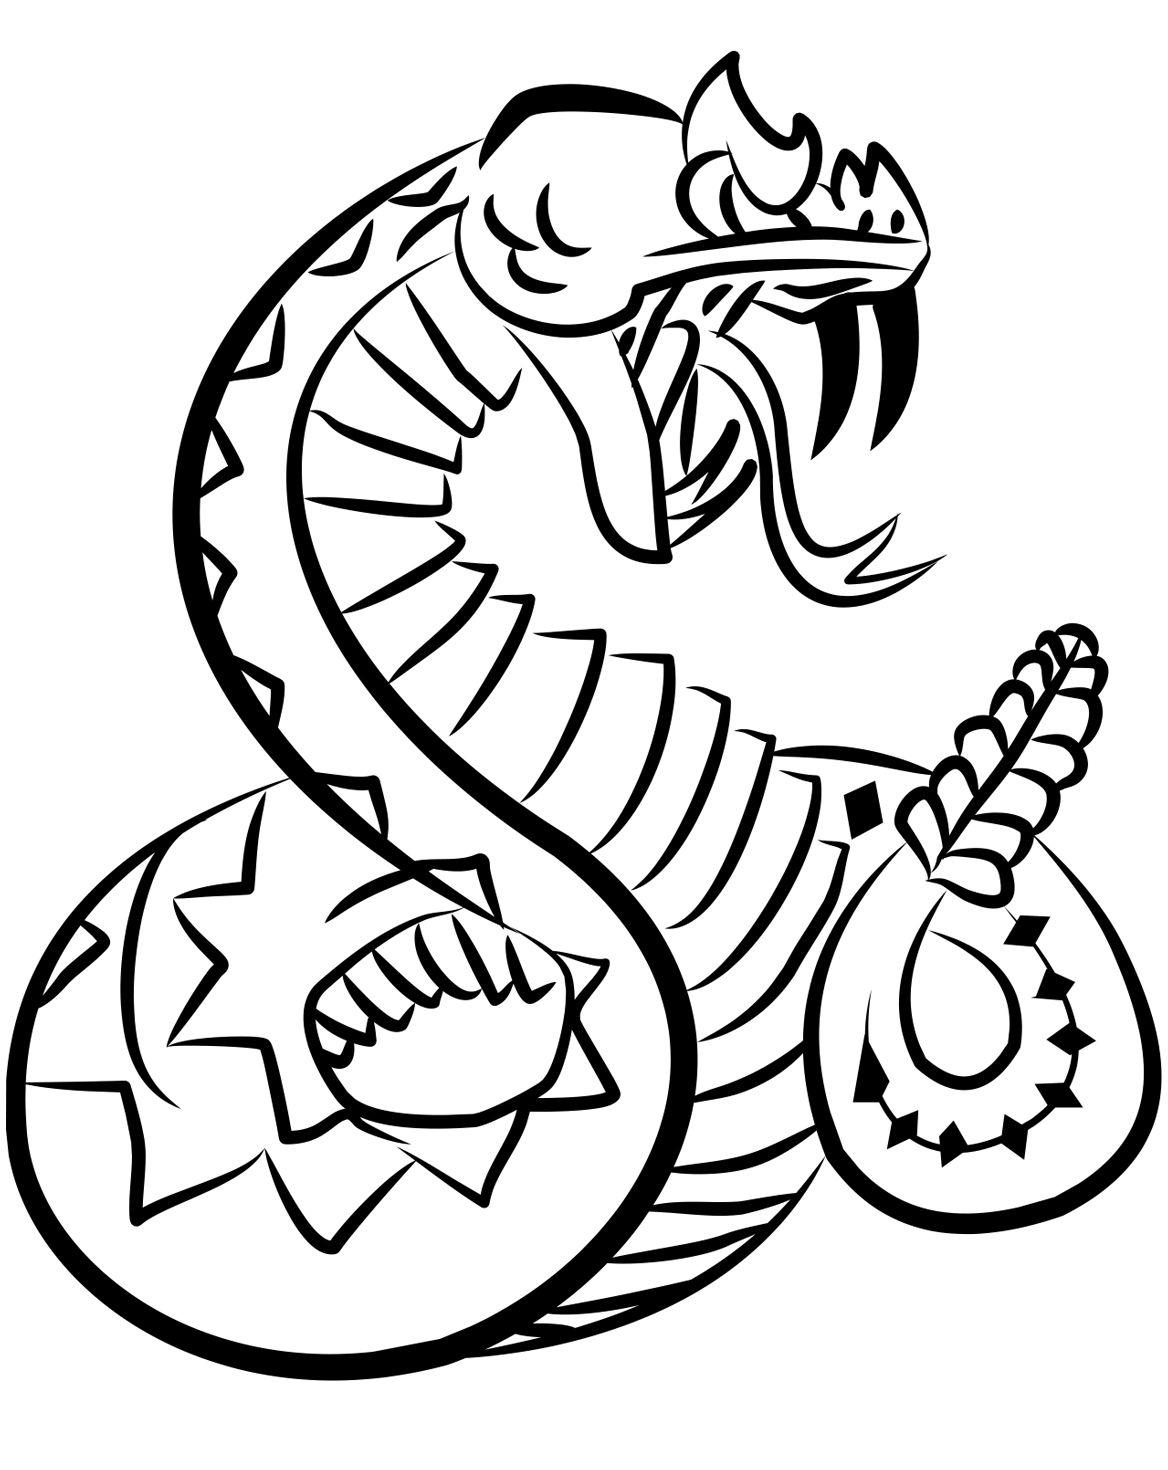 Rattlesnake Logo - JPG - Rattlesnakes Logo Clipart Image